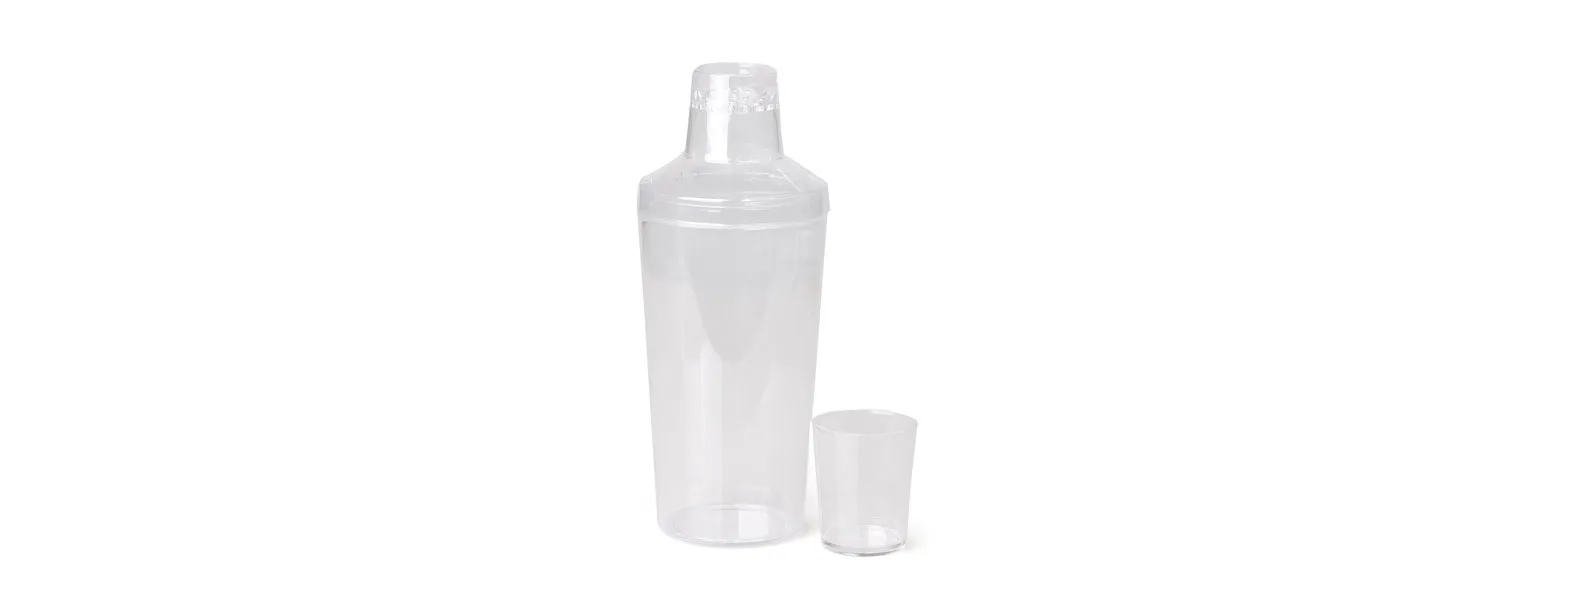 Kit composto por coqueteleira em plástico PS (poliestireno) com tampa, coador, dosador em ml e oz. Conta também com duas taças em vidro com capacidade de 490 ml cada uma.